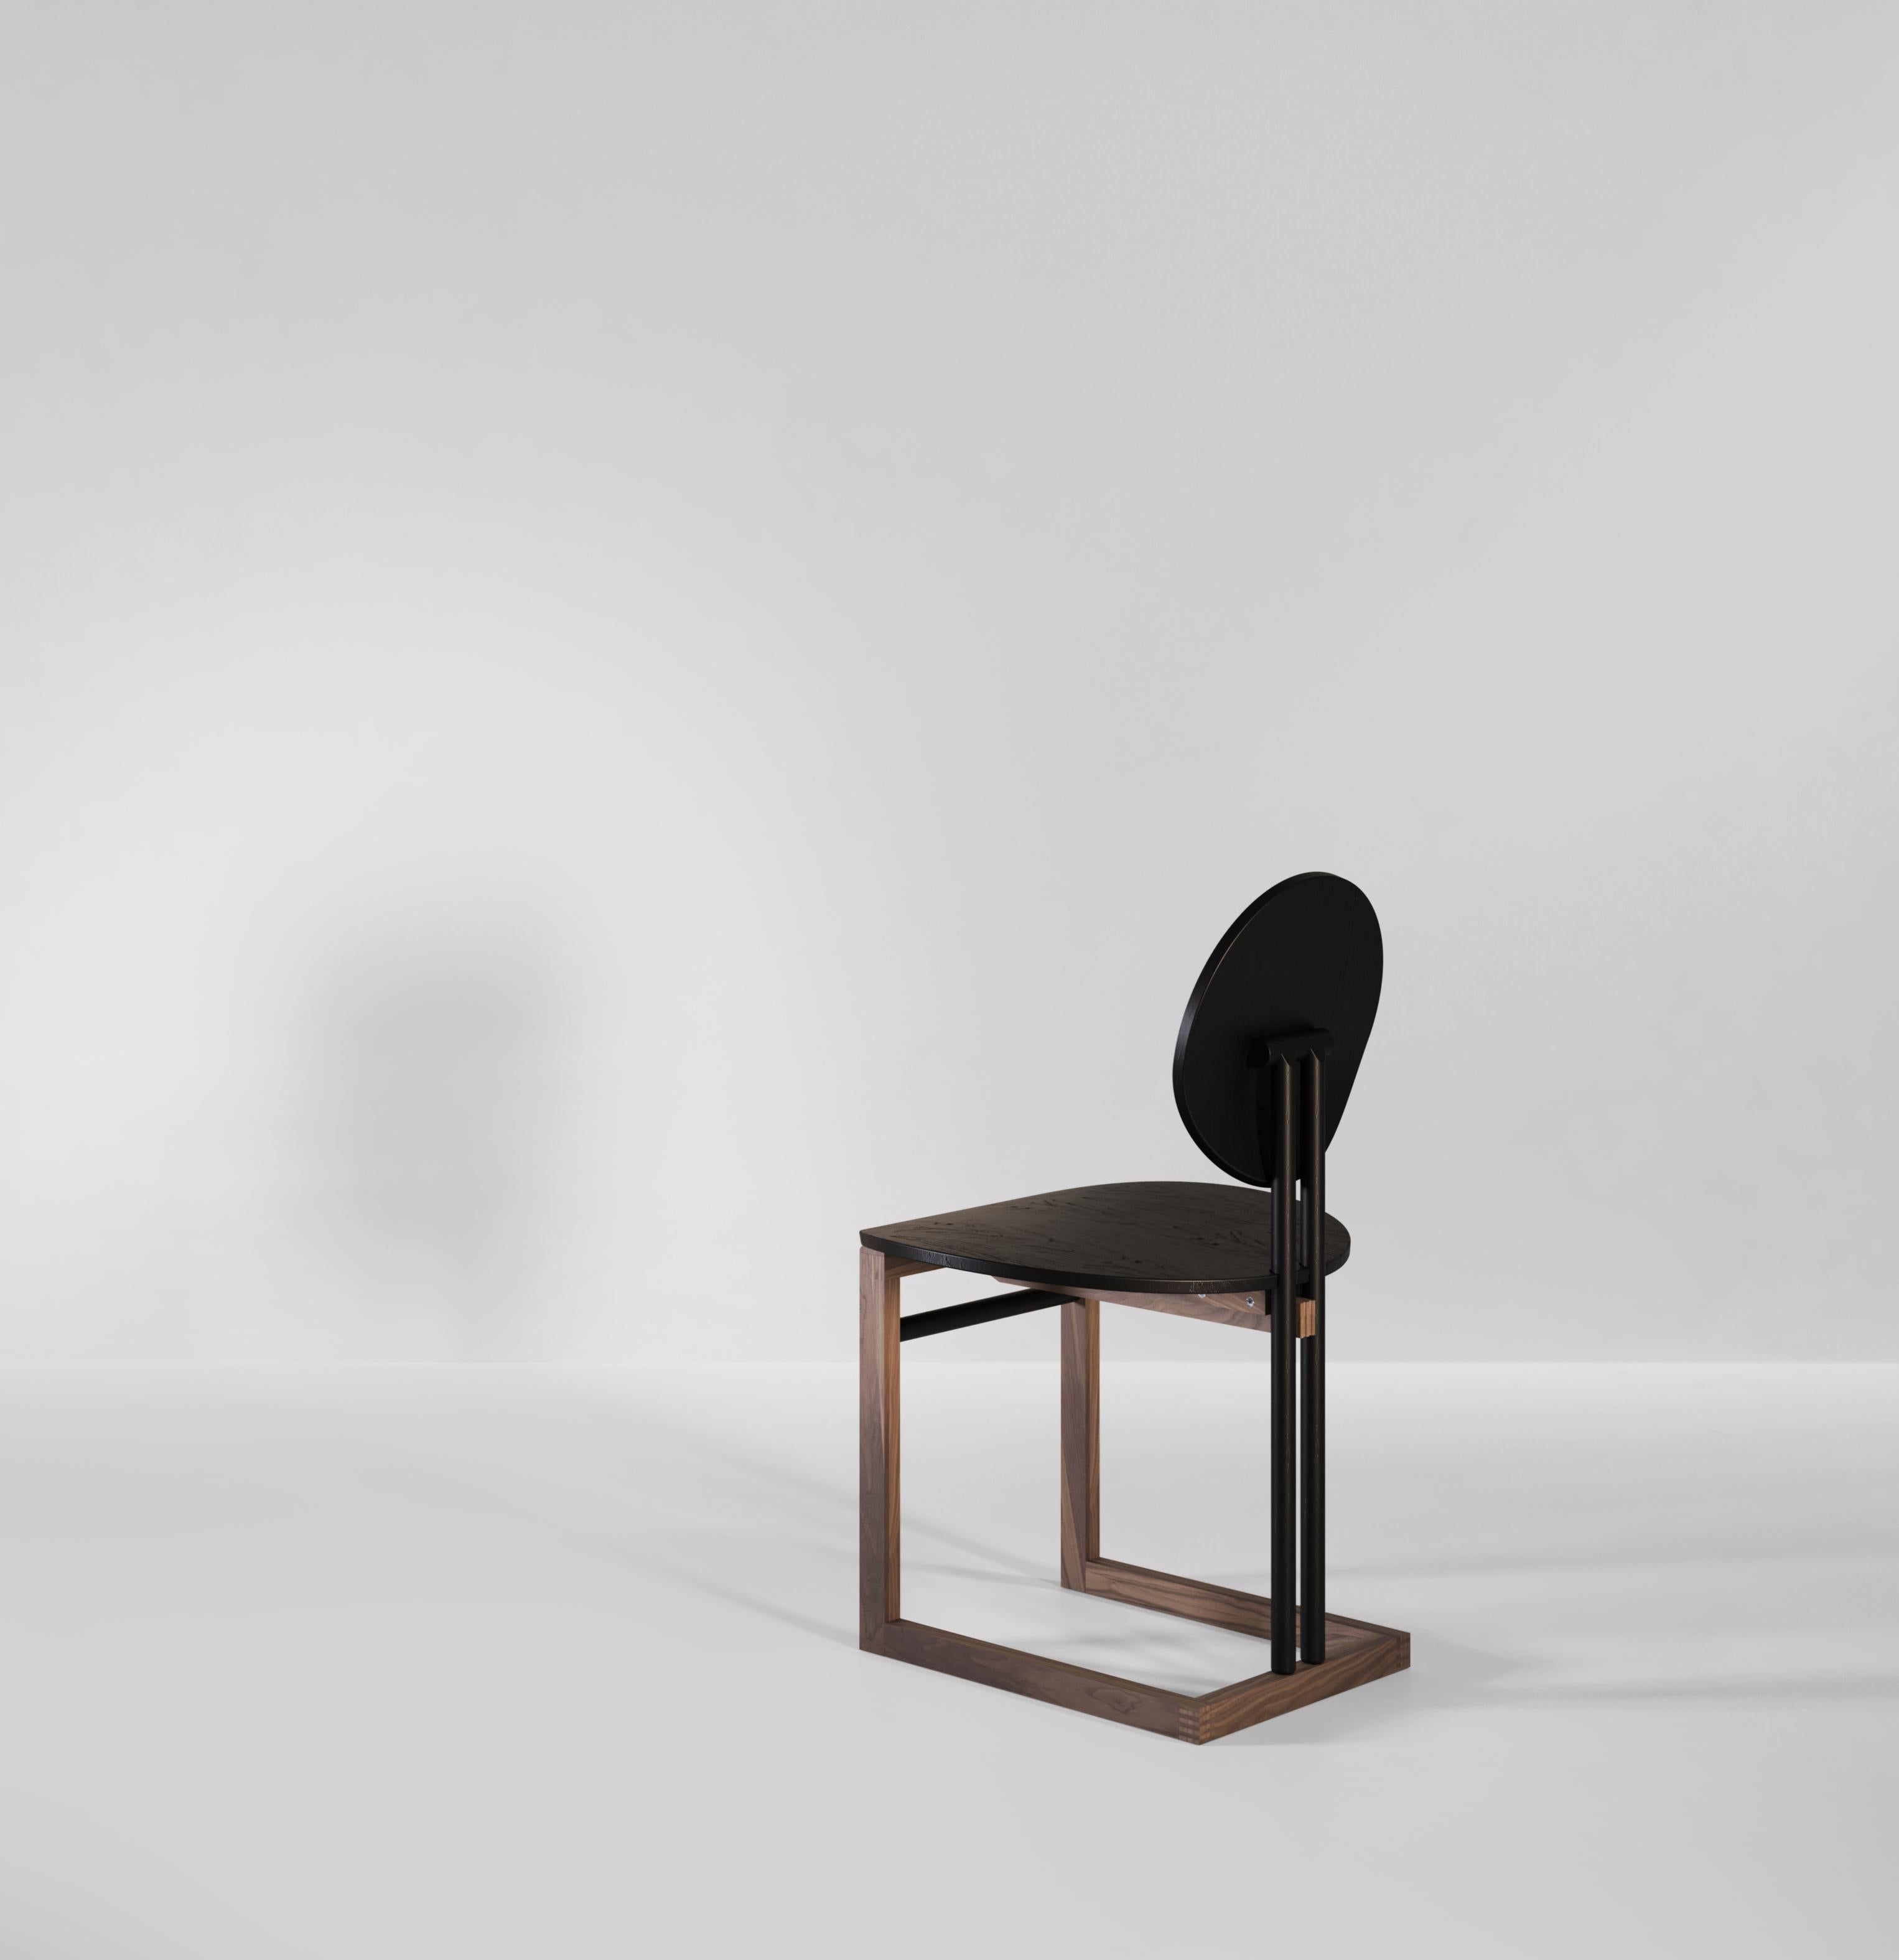 Une chaise de salle à manger en bois fabriquée à la main, inspirée par des formes vintage et des techniques contemporaines. Deux quasi-cercles faisant office de dossier et d'assise offrant confort et style. La structure qui supporte la chaise est en